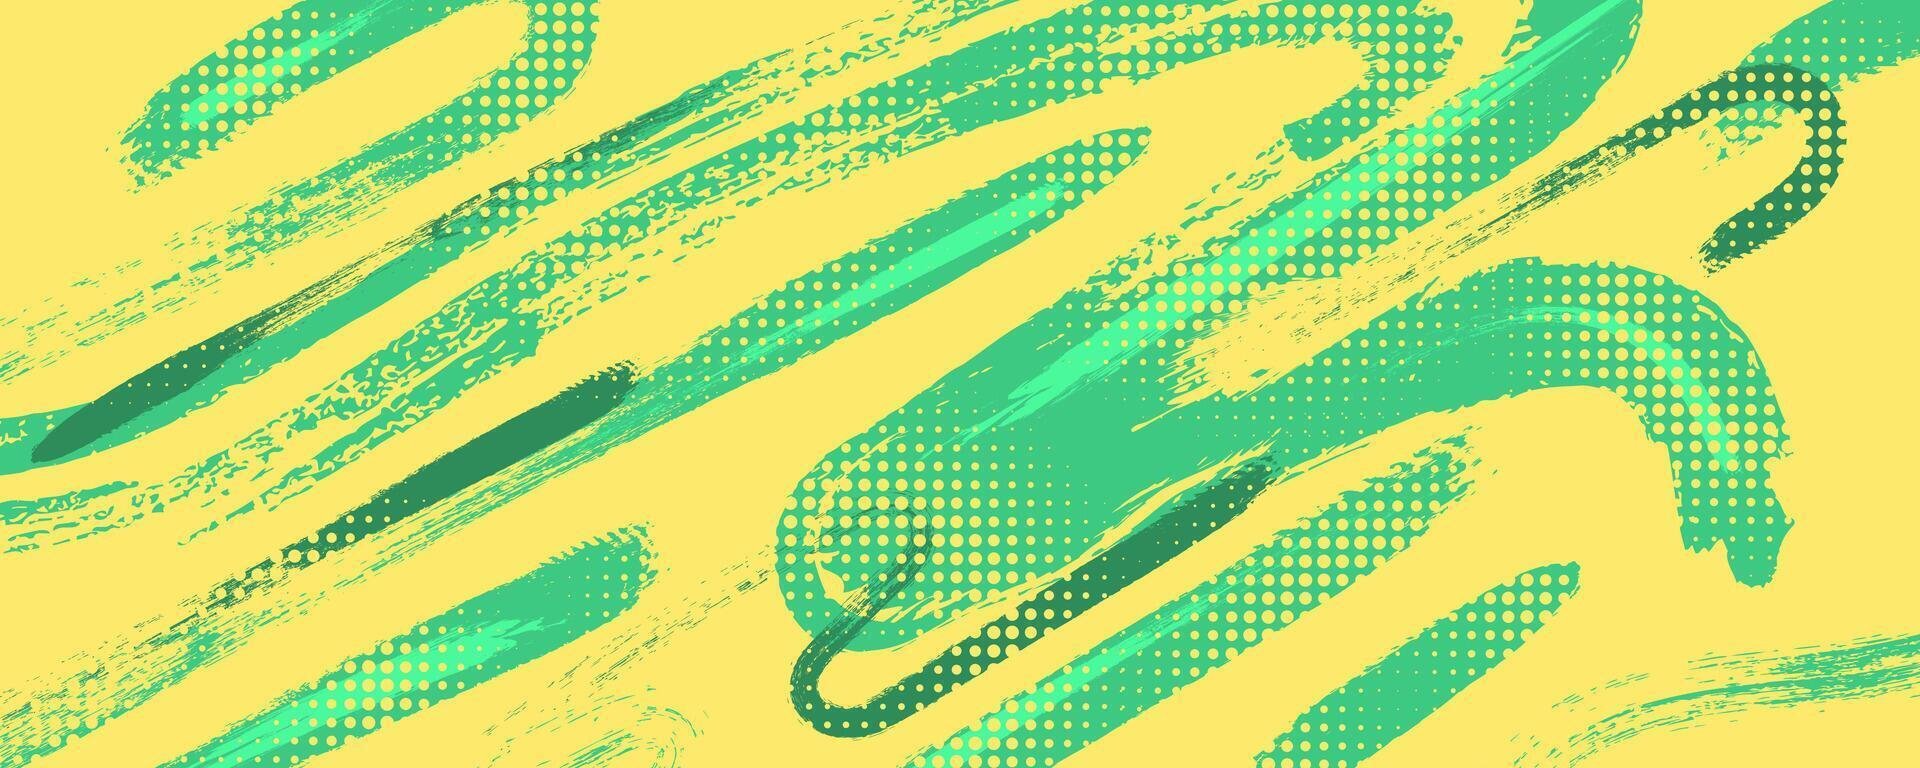 resumen verde y amarillo grunge cepillo antecedentes con trama de semitonos efecto. Deportes antecedentes con grunge concepto vector